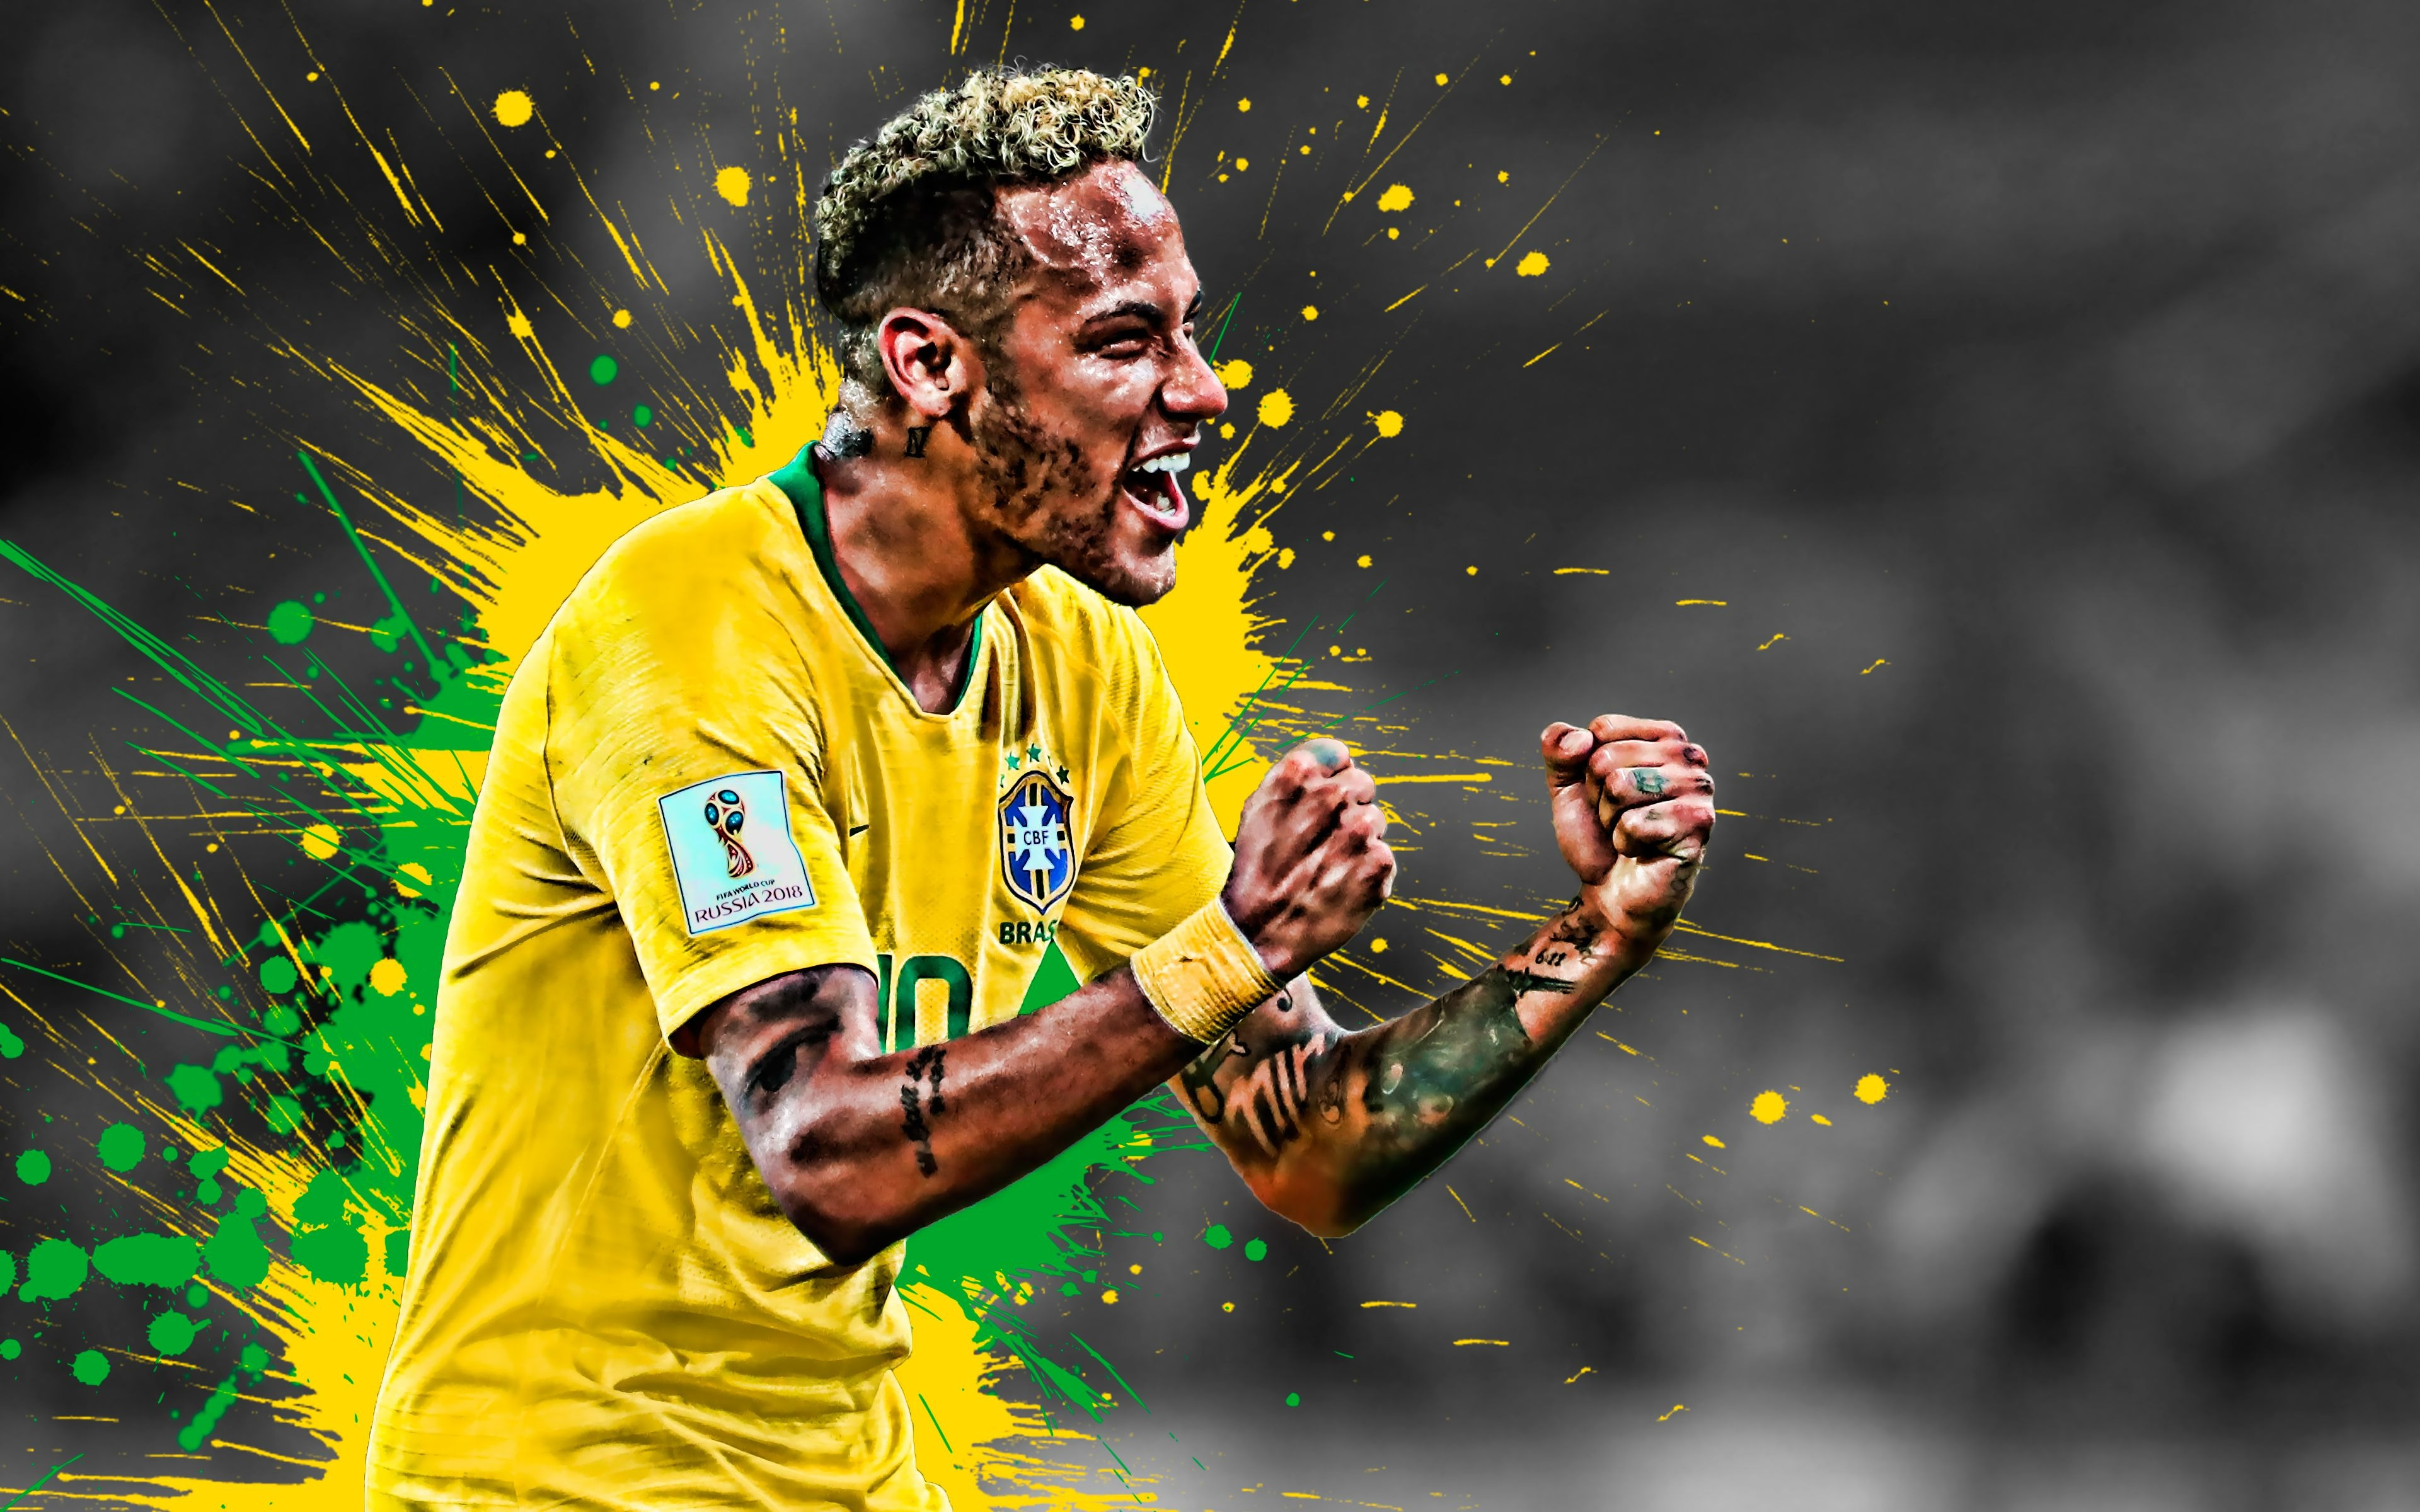 Ảnh Neymar - Cầu Thủ Bóng Đá Thế Giới Đẹp Trai, Chất Nhất